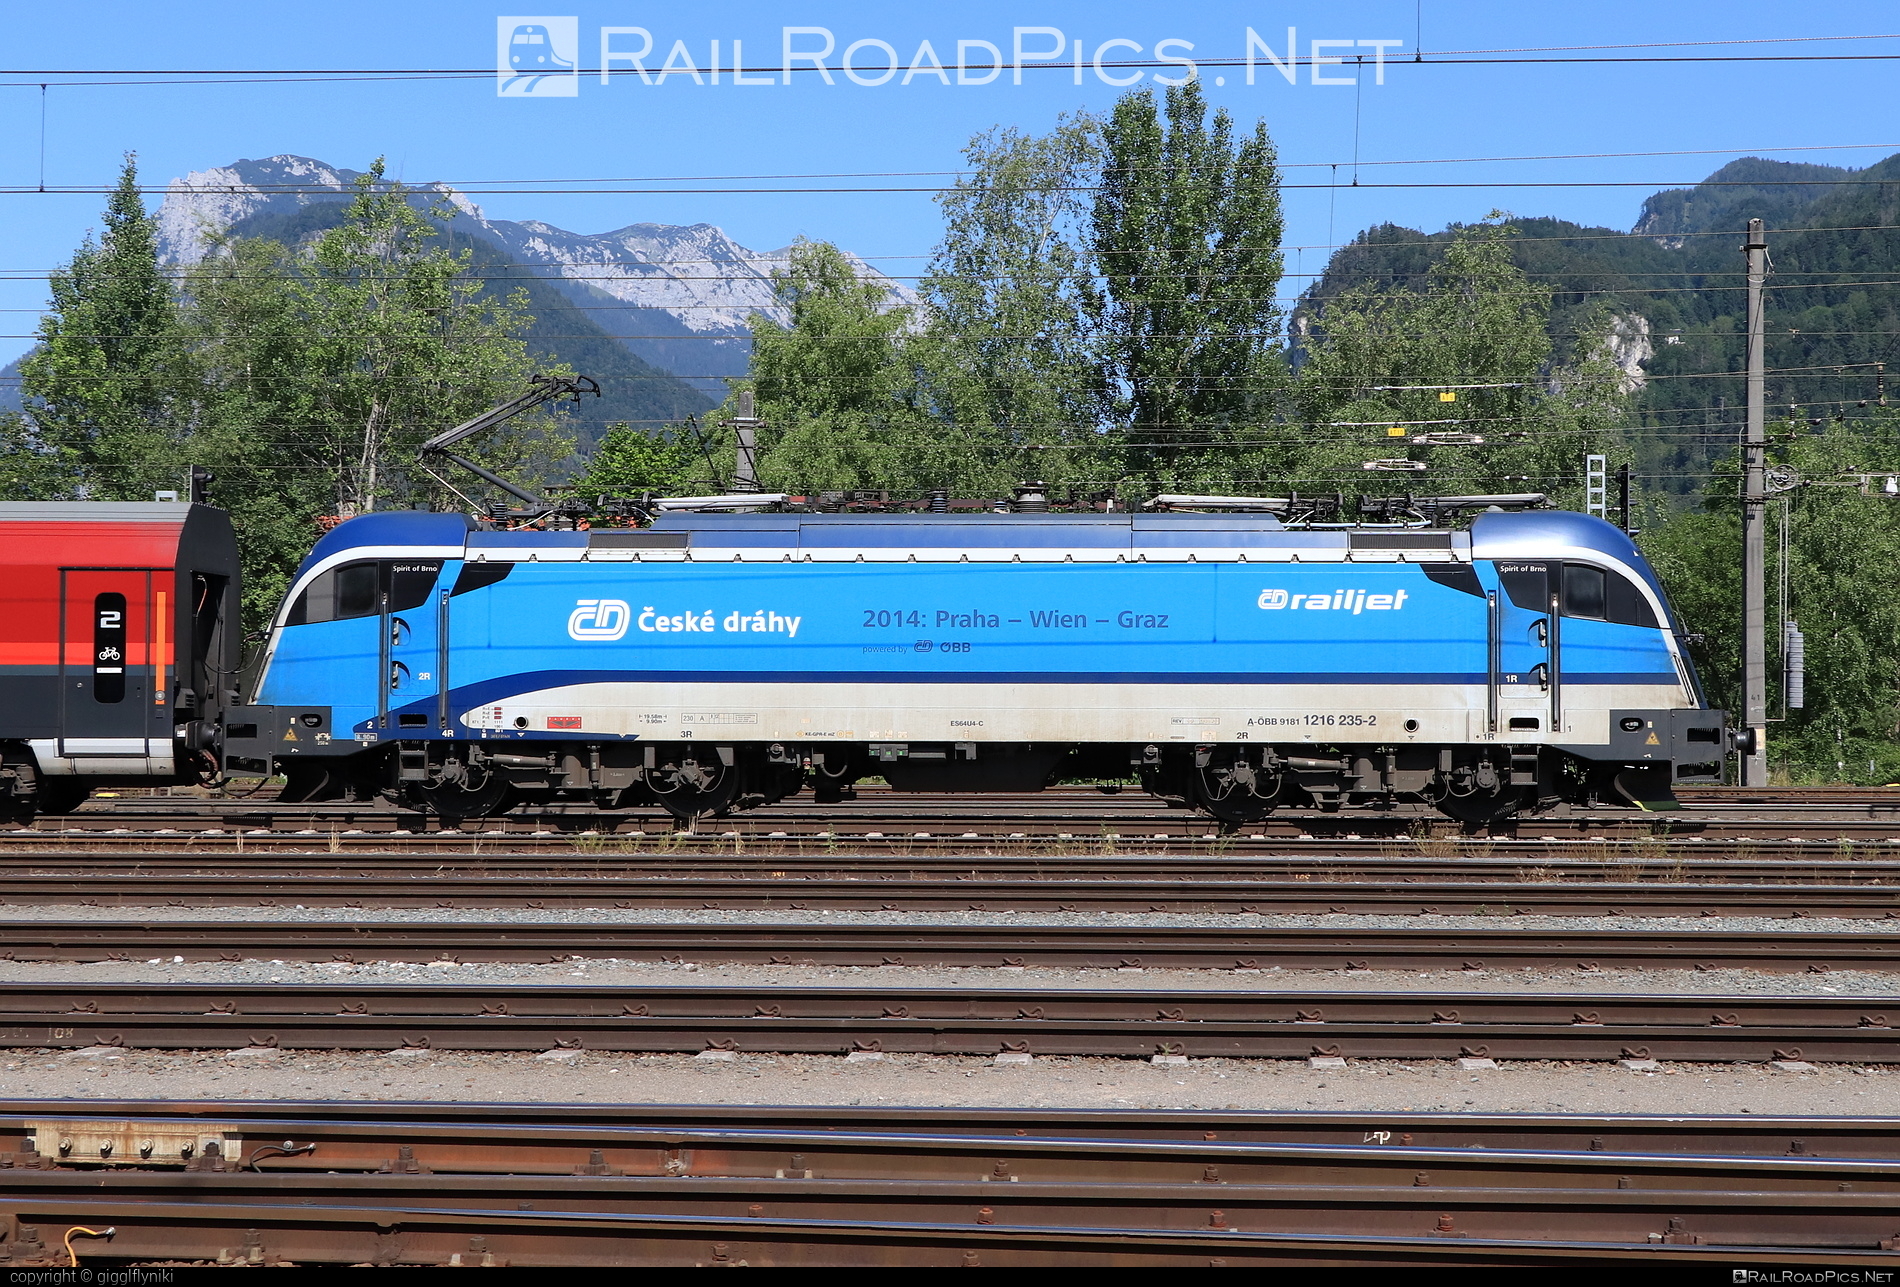 Siemens ES 64 U4 - 1216 235 operated by České dráhy, a.s. #cd #cdRailjet #ceskeDrahyRailjet #ceskedrahy #es64 #es64u4 #eurosprinter #obb #osterreichischebundesbahnen #rail #railjet #siemens #siemensEs64 #siemensEs64u4 #siemenstaurus #taurus #tauruslocomotive